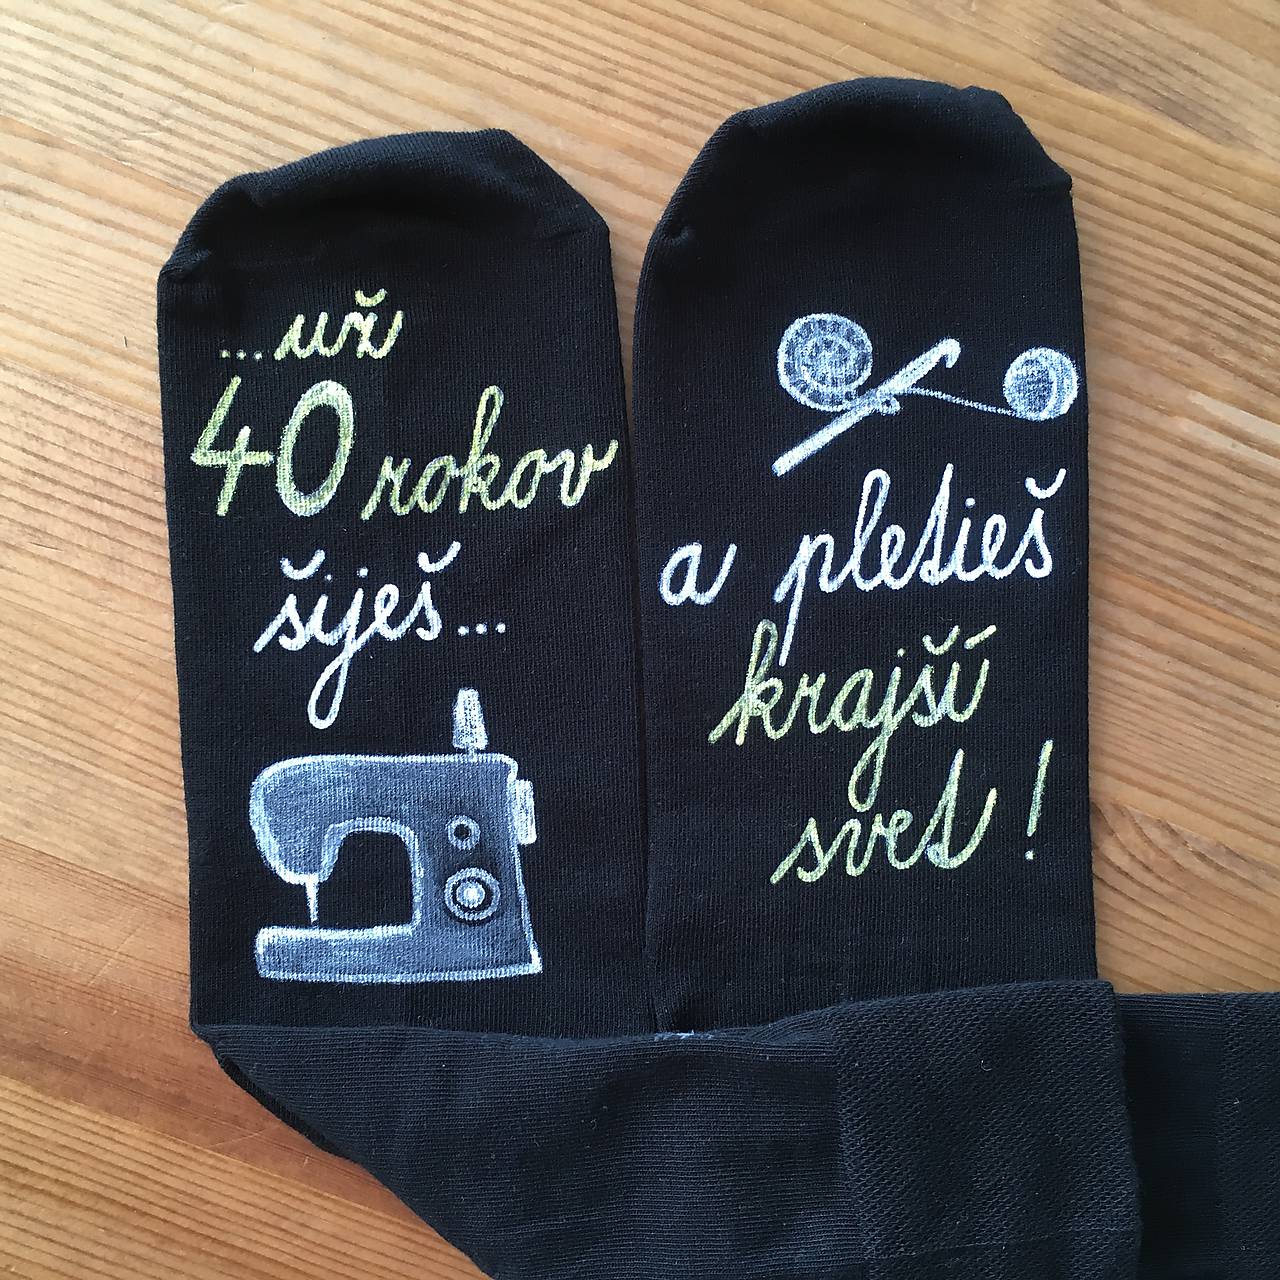 Maľované čierne ponožky k narodeninám ("Už 40 rokov šiješ a pletieš krajší svet")